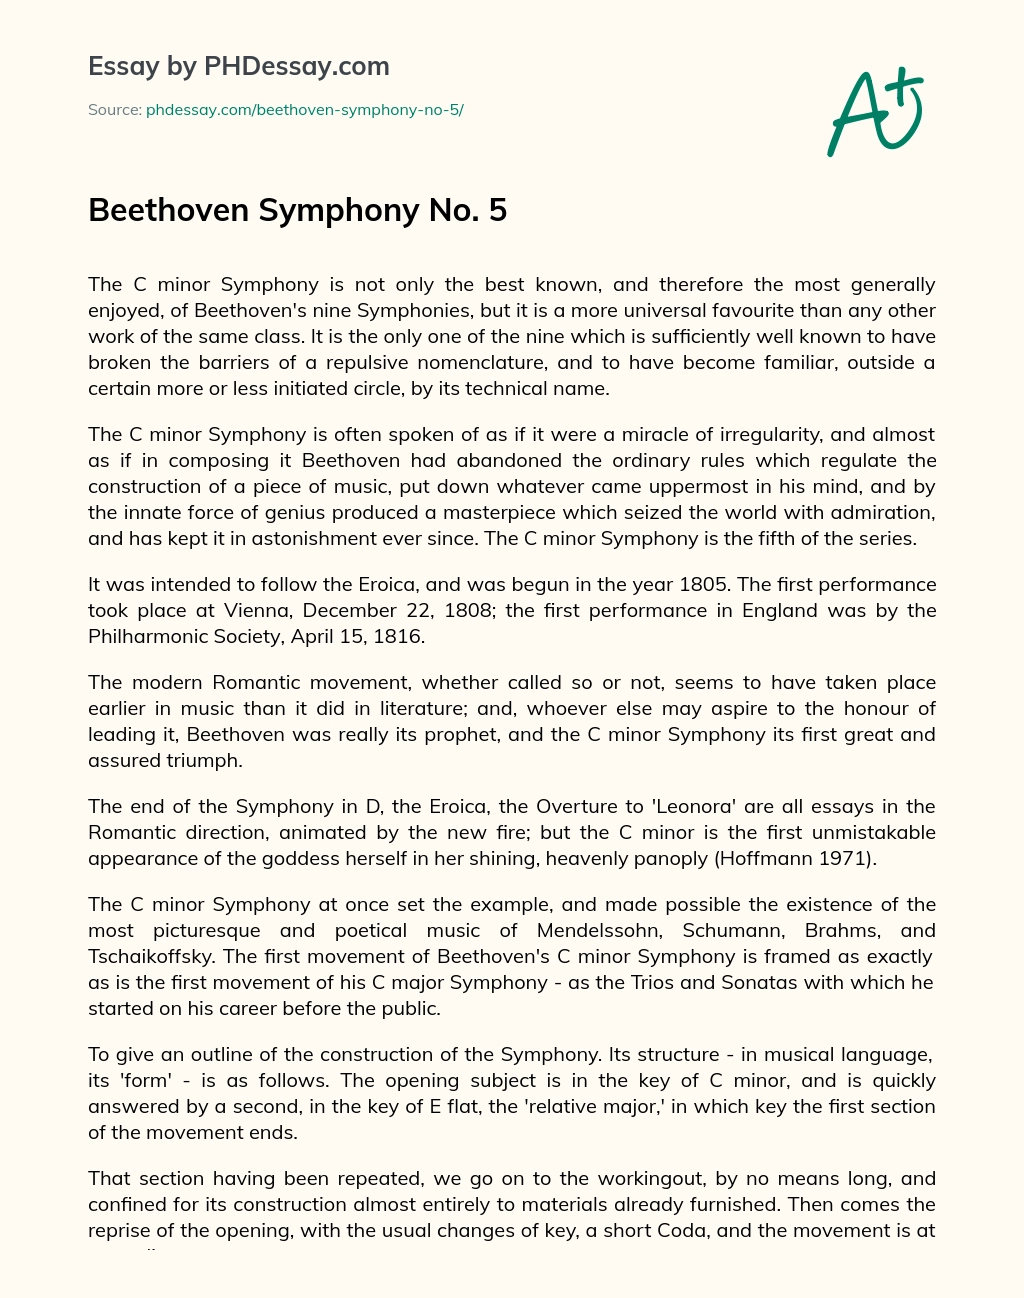 Beethoven Symphony No. 5 essay